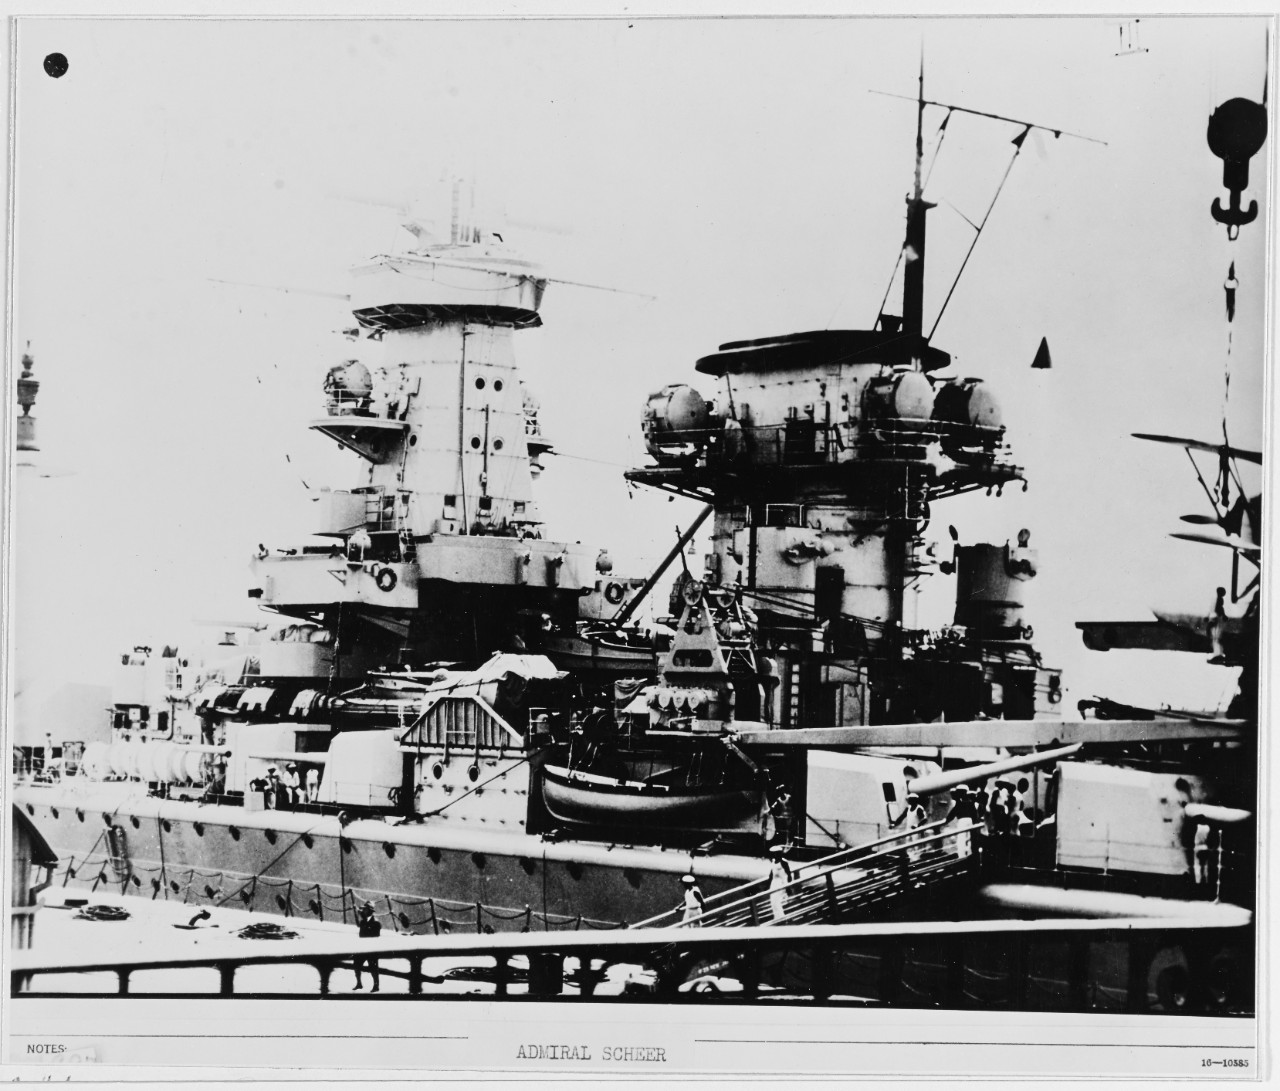 ADMIRAL SCHEER German Armored Ship, 1933-45